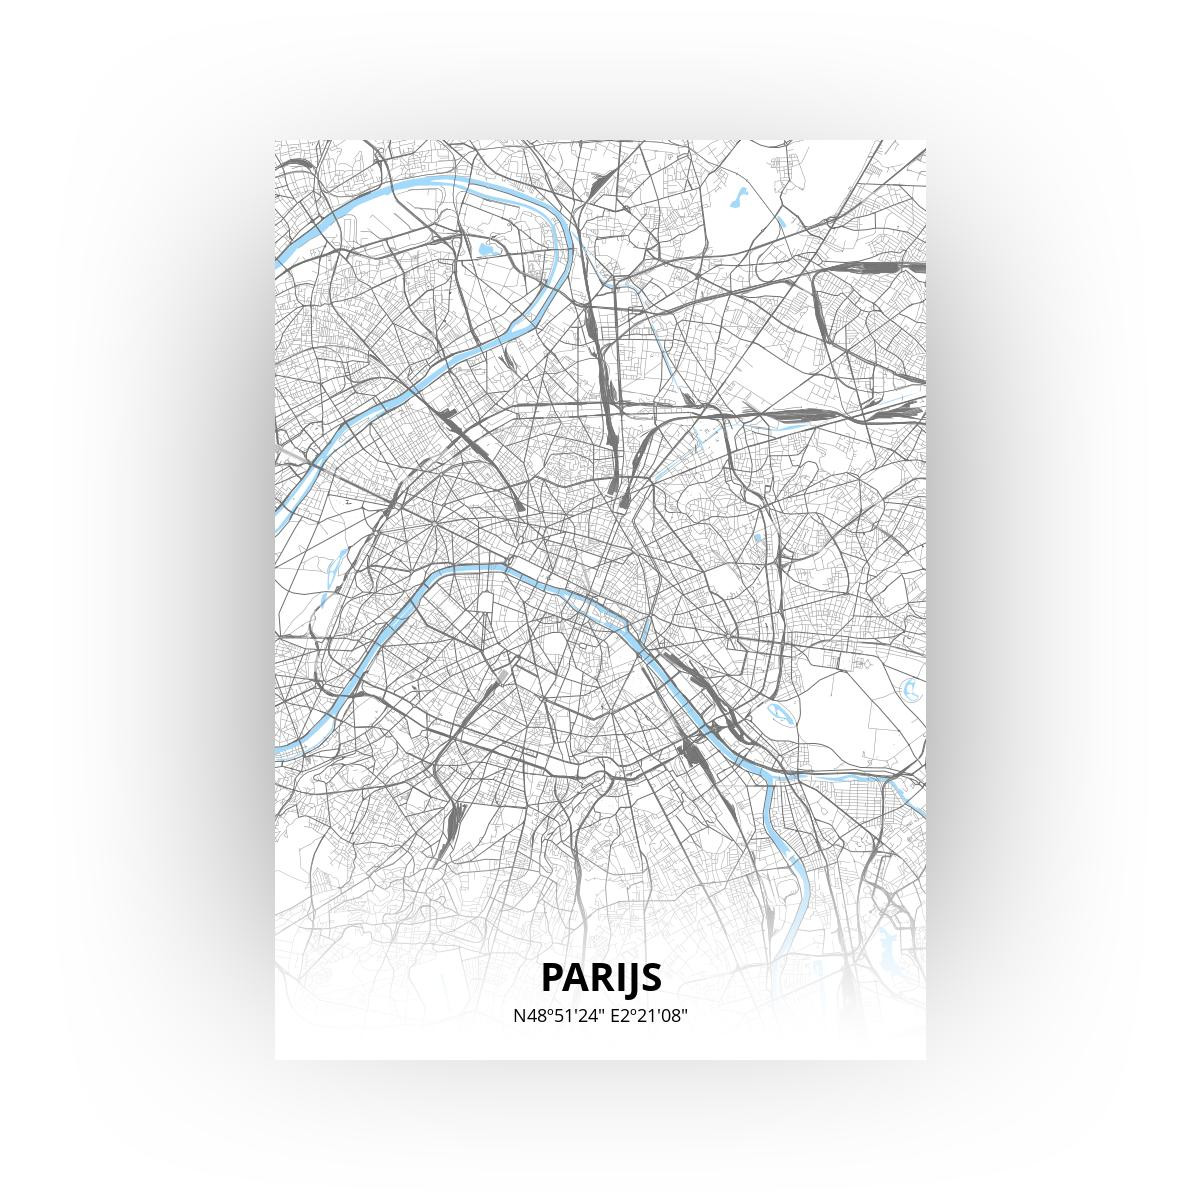 Parijs poster - Zelf aan te passen!